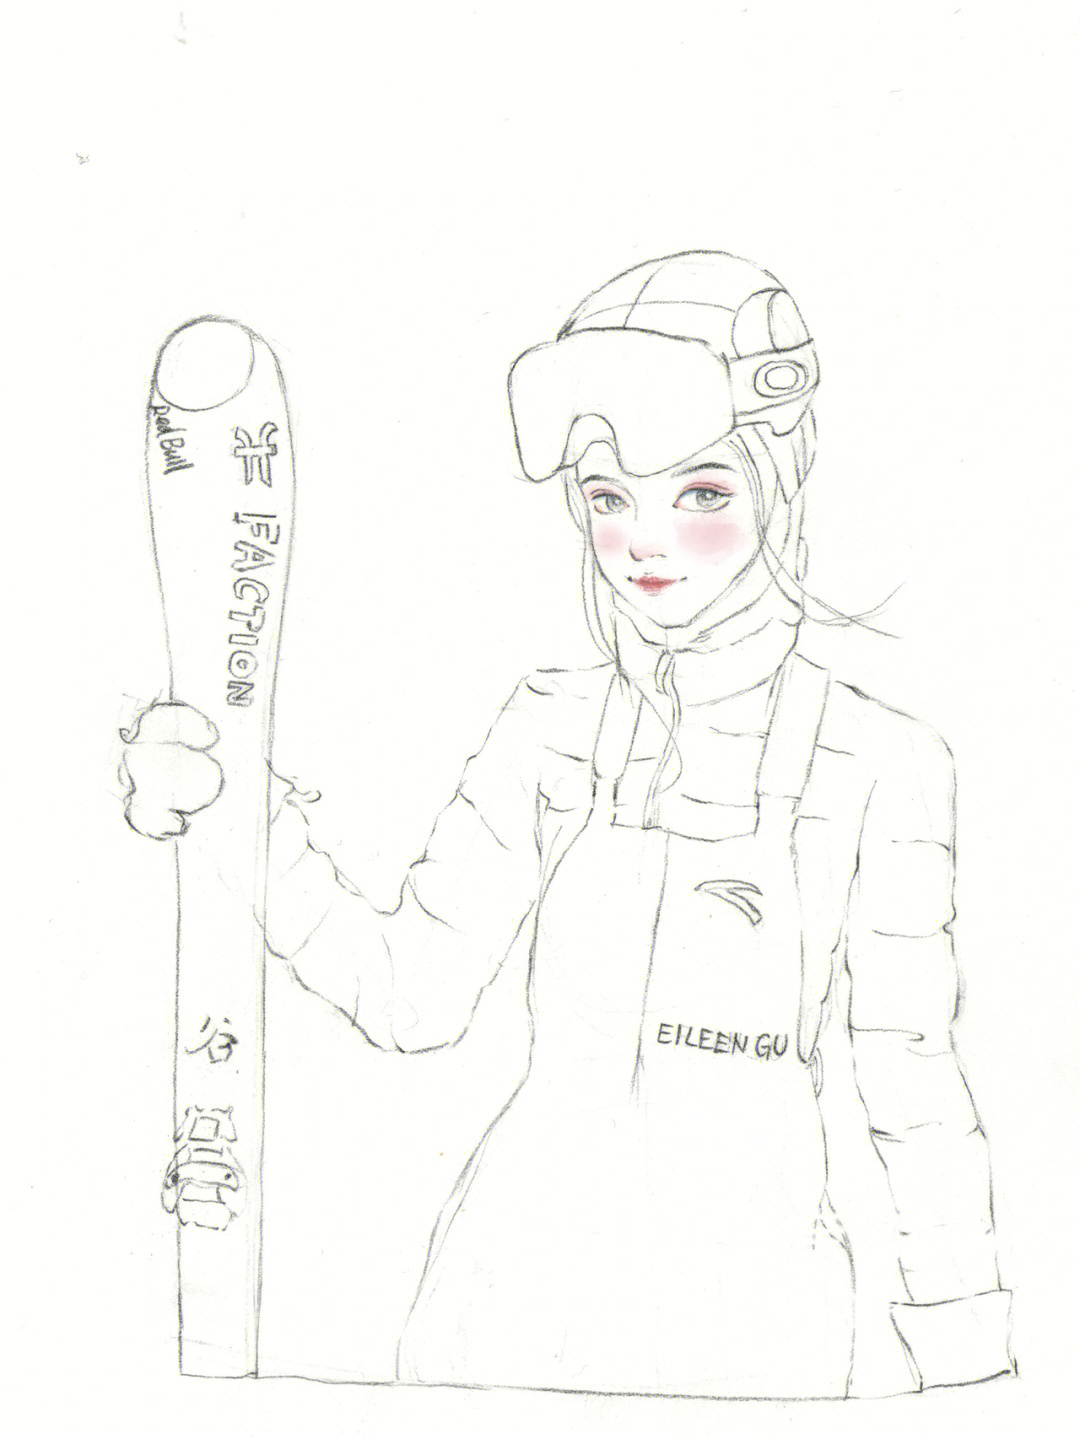 谷爱凌滑雪的简笔画图片